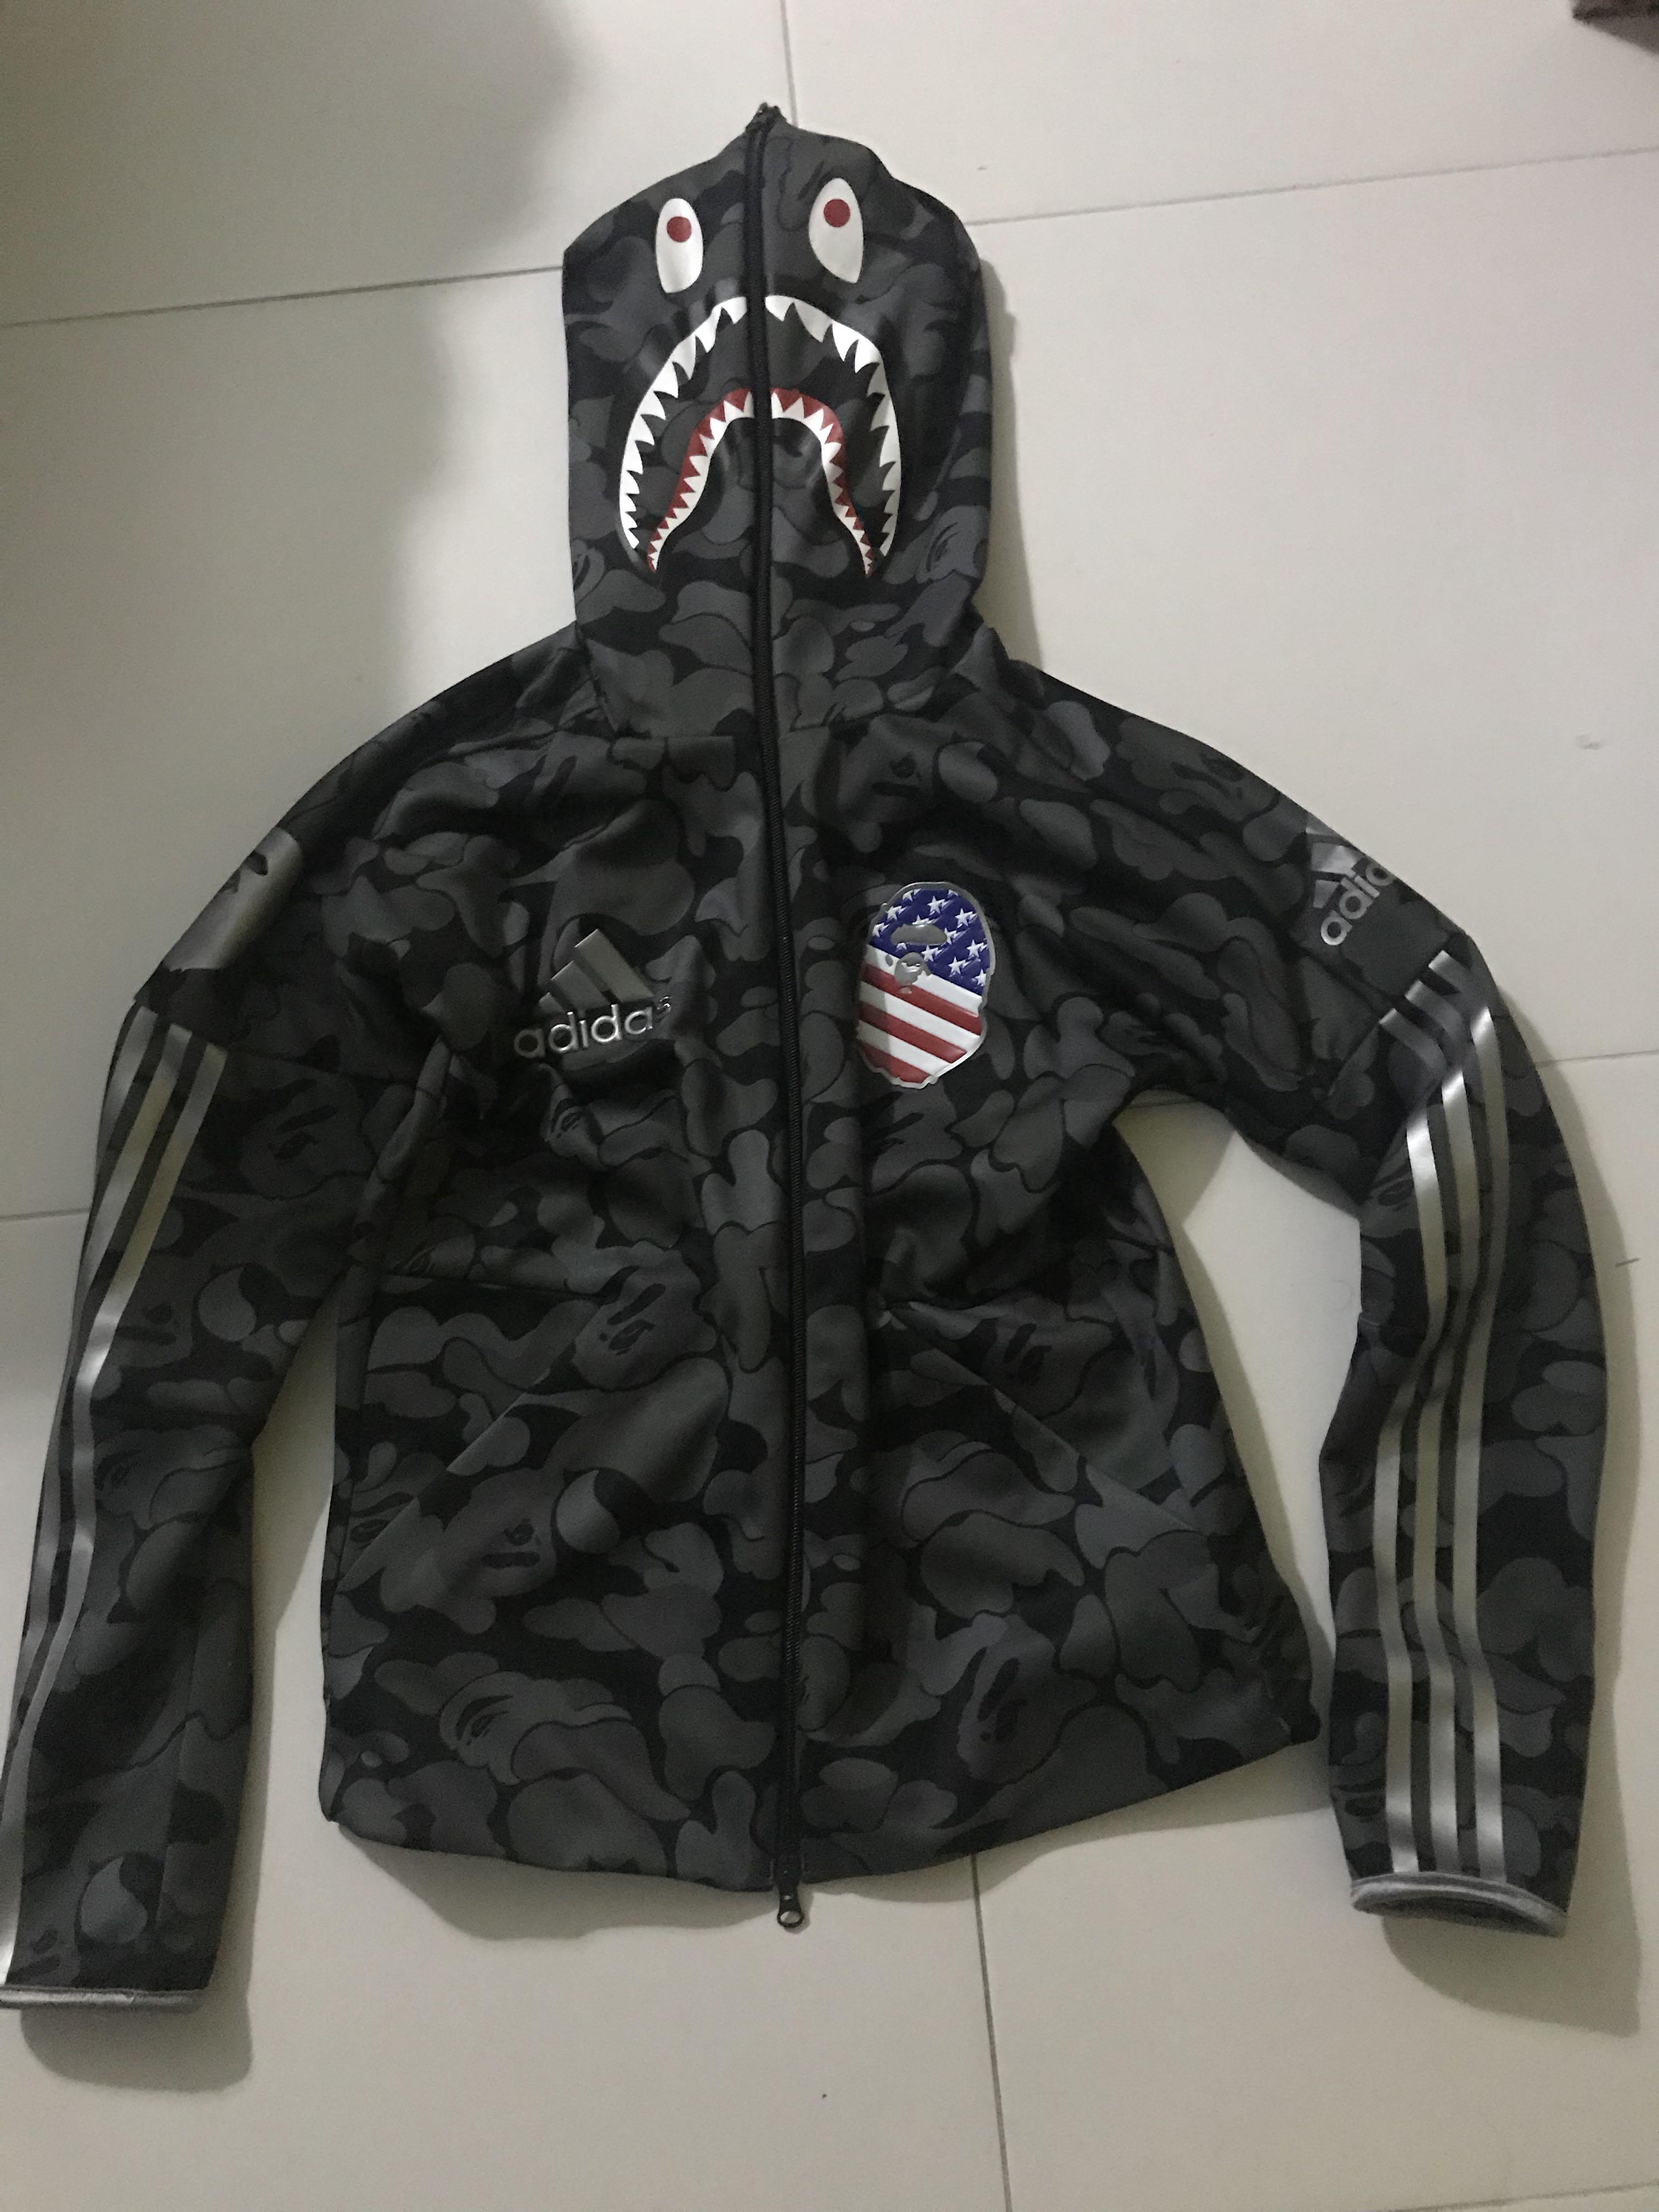 adidas shark jacket